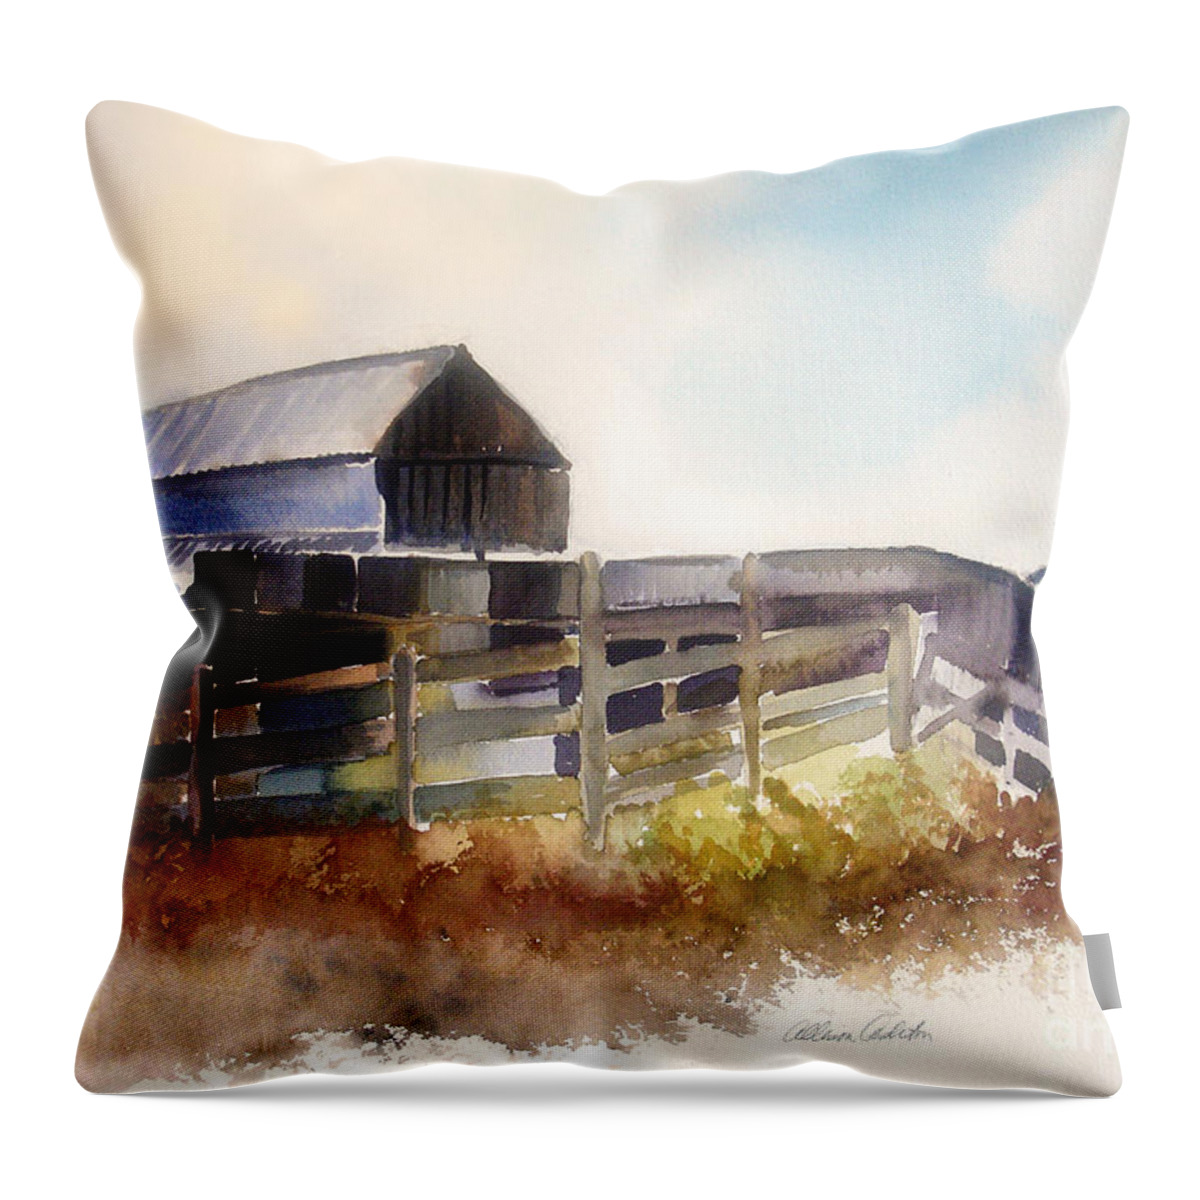 Farmhouse Throw Pillow featuring the painting Dad' Farmhouse by Allison Ashton